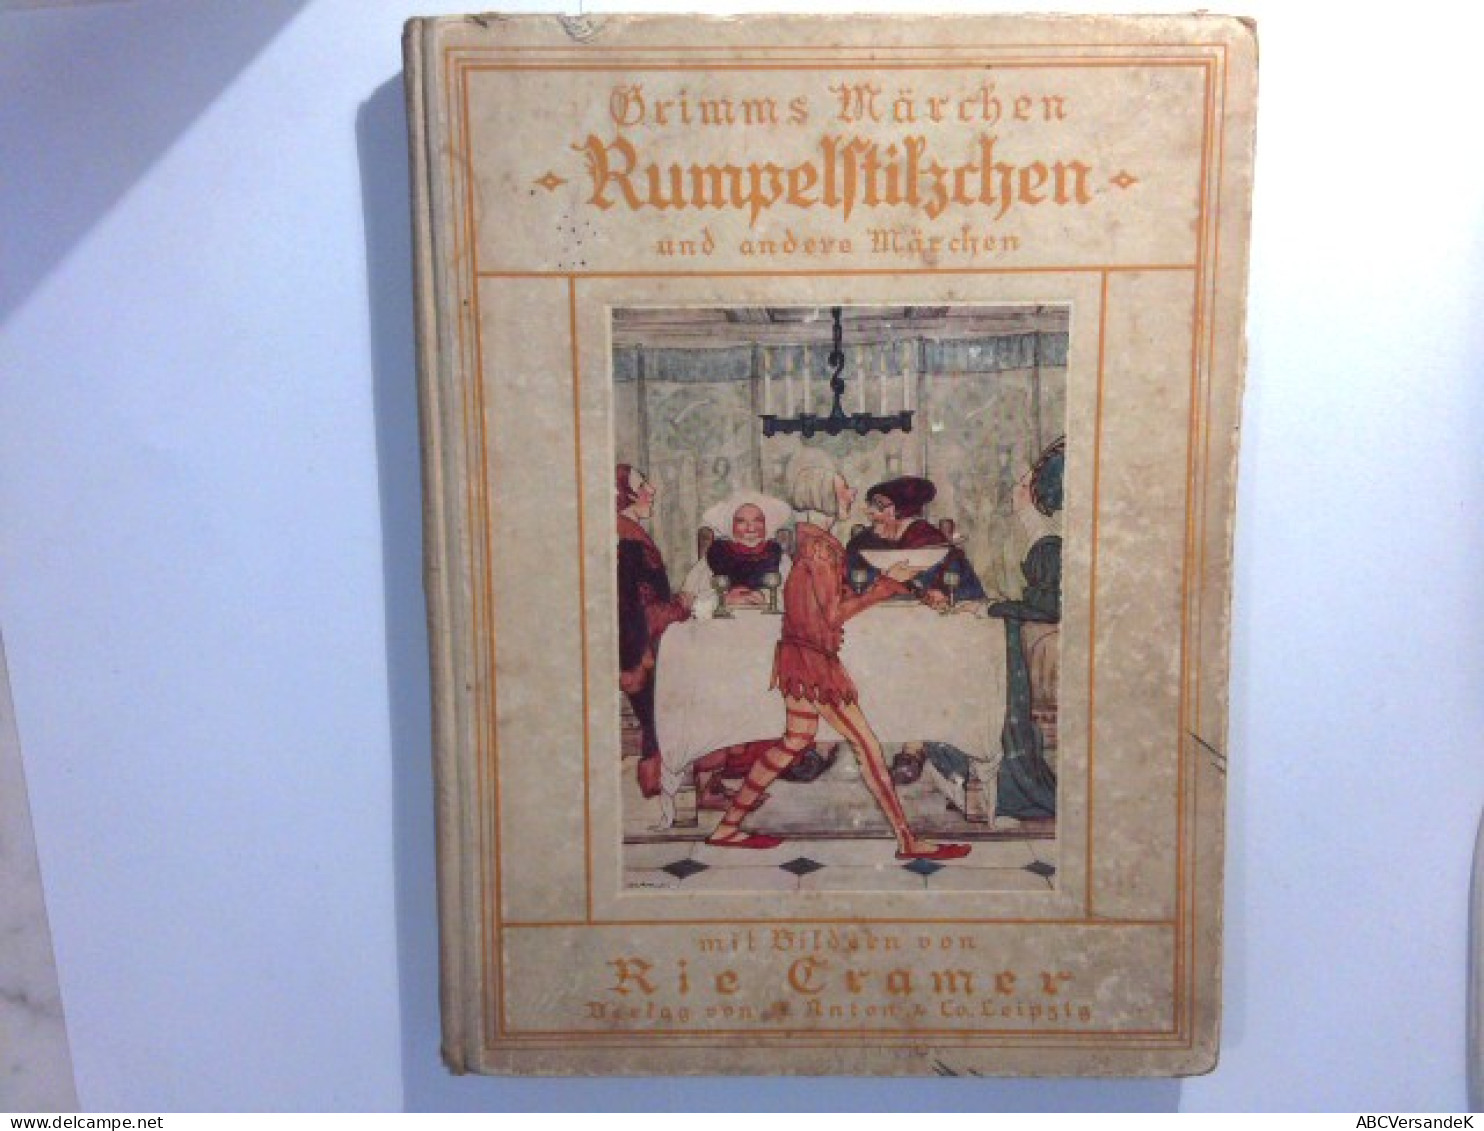 Grimms Märchen : Rumpelstilzchen Und Andere Märchen - Tales & Legends